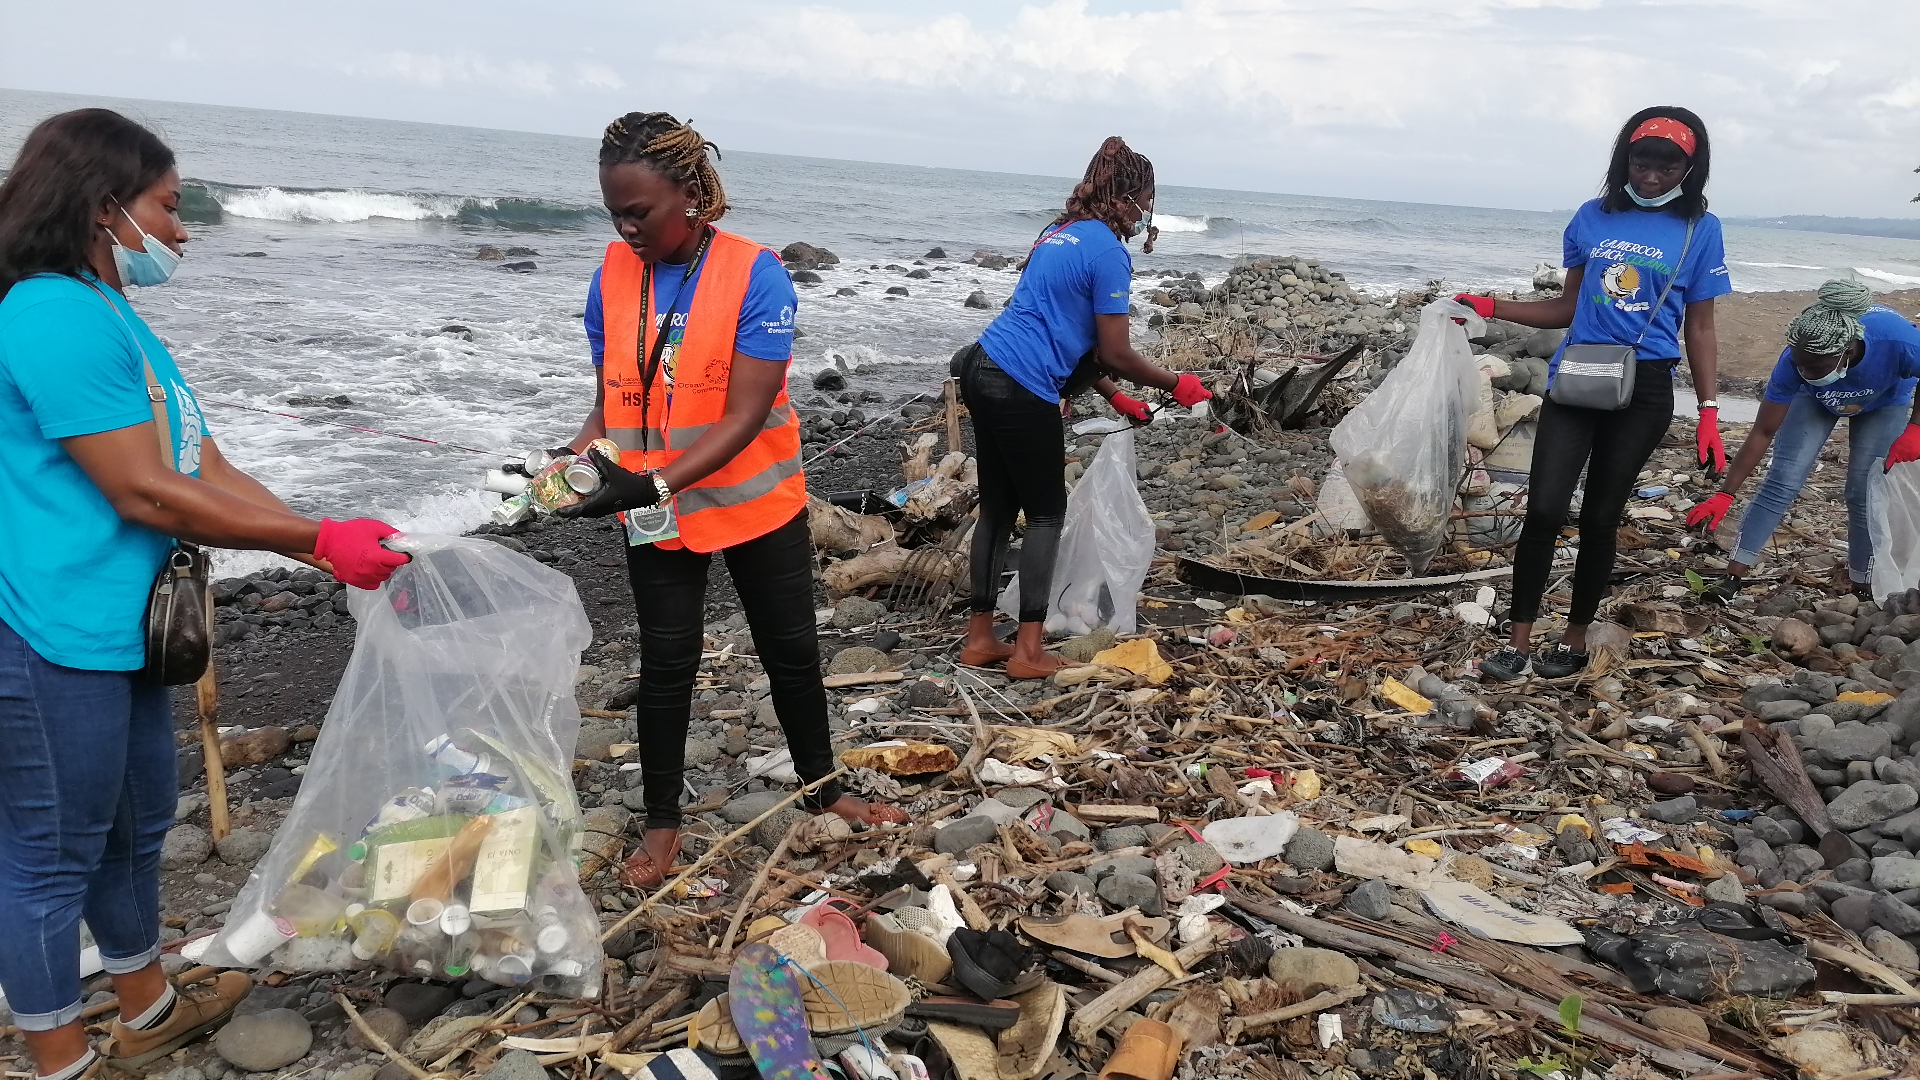 Youth volunteers spearhead marine debris cleanup in Cameroon